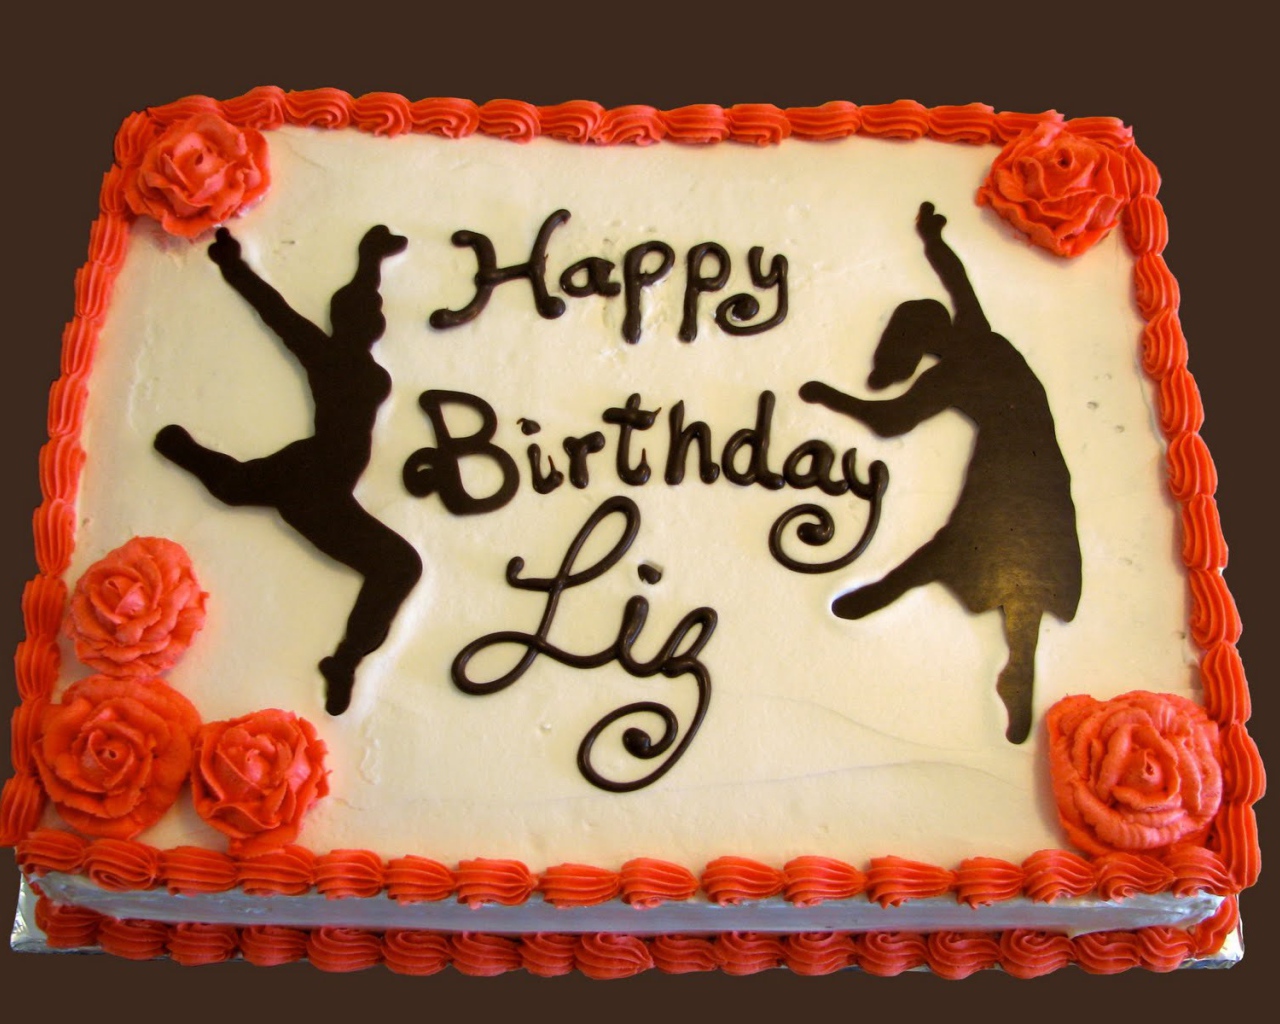  Оранжевый торт на день рождения